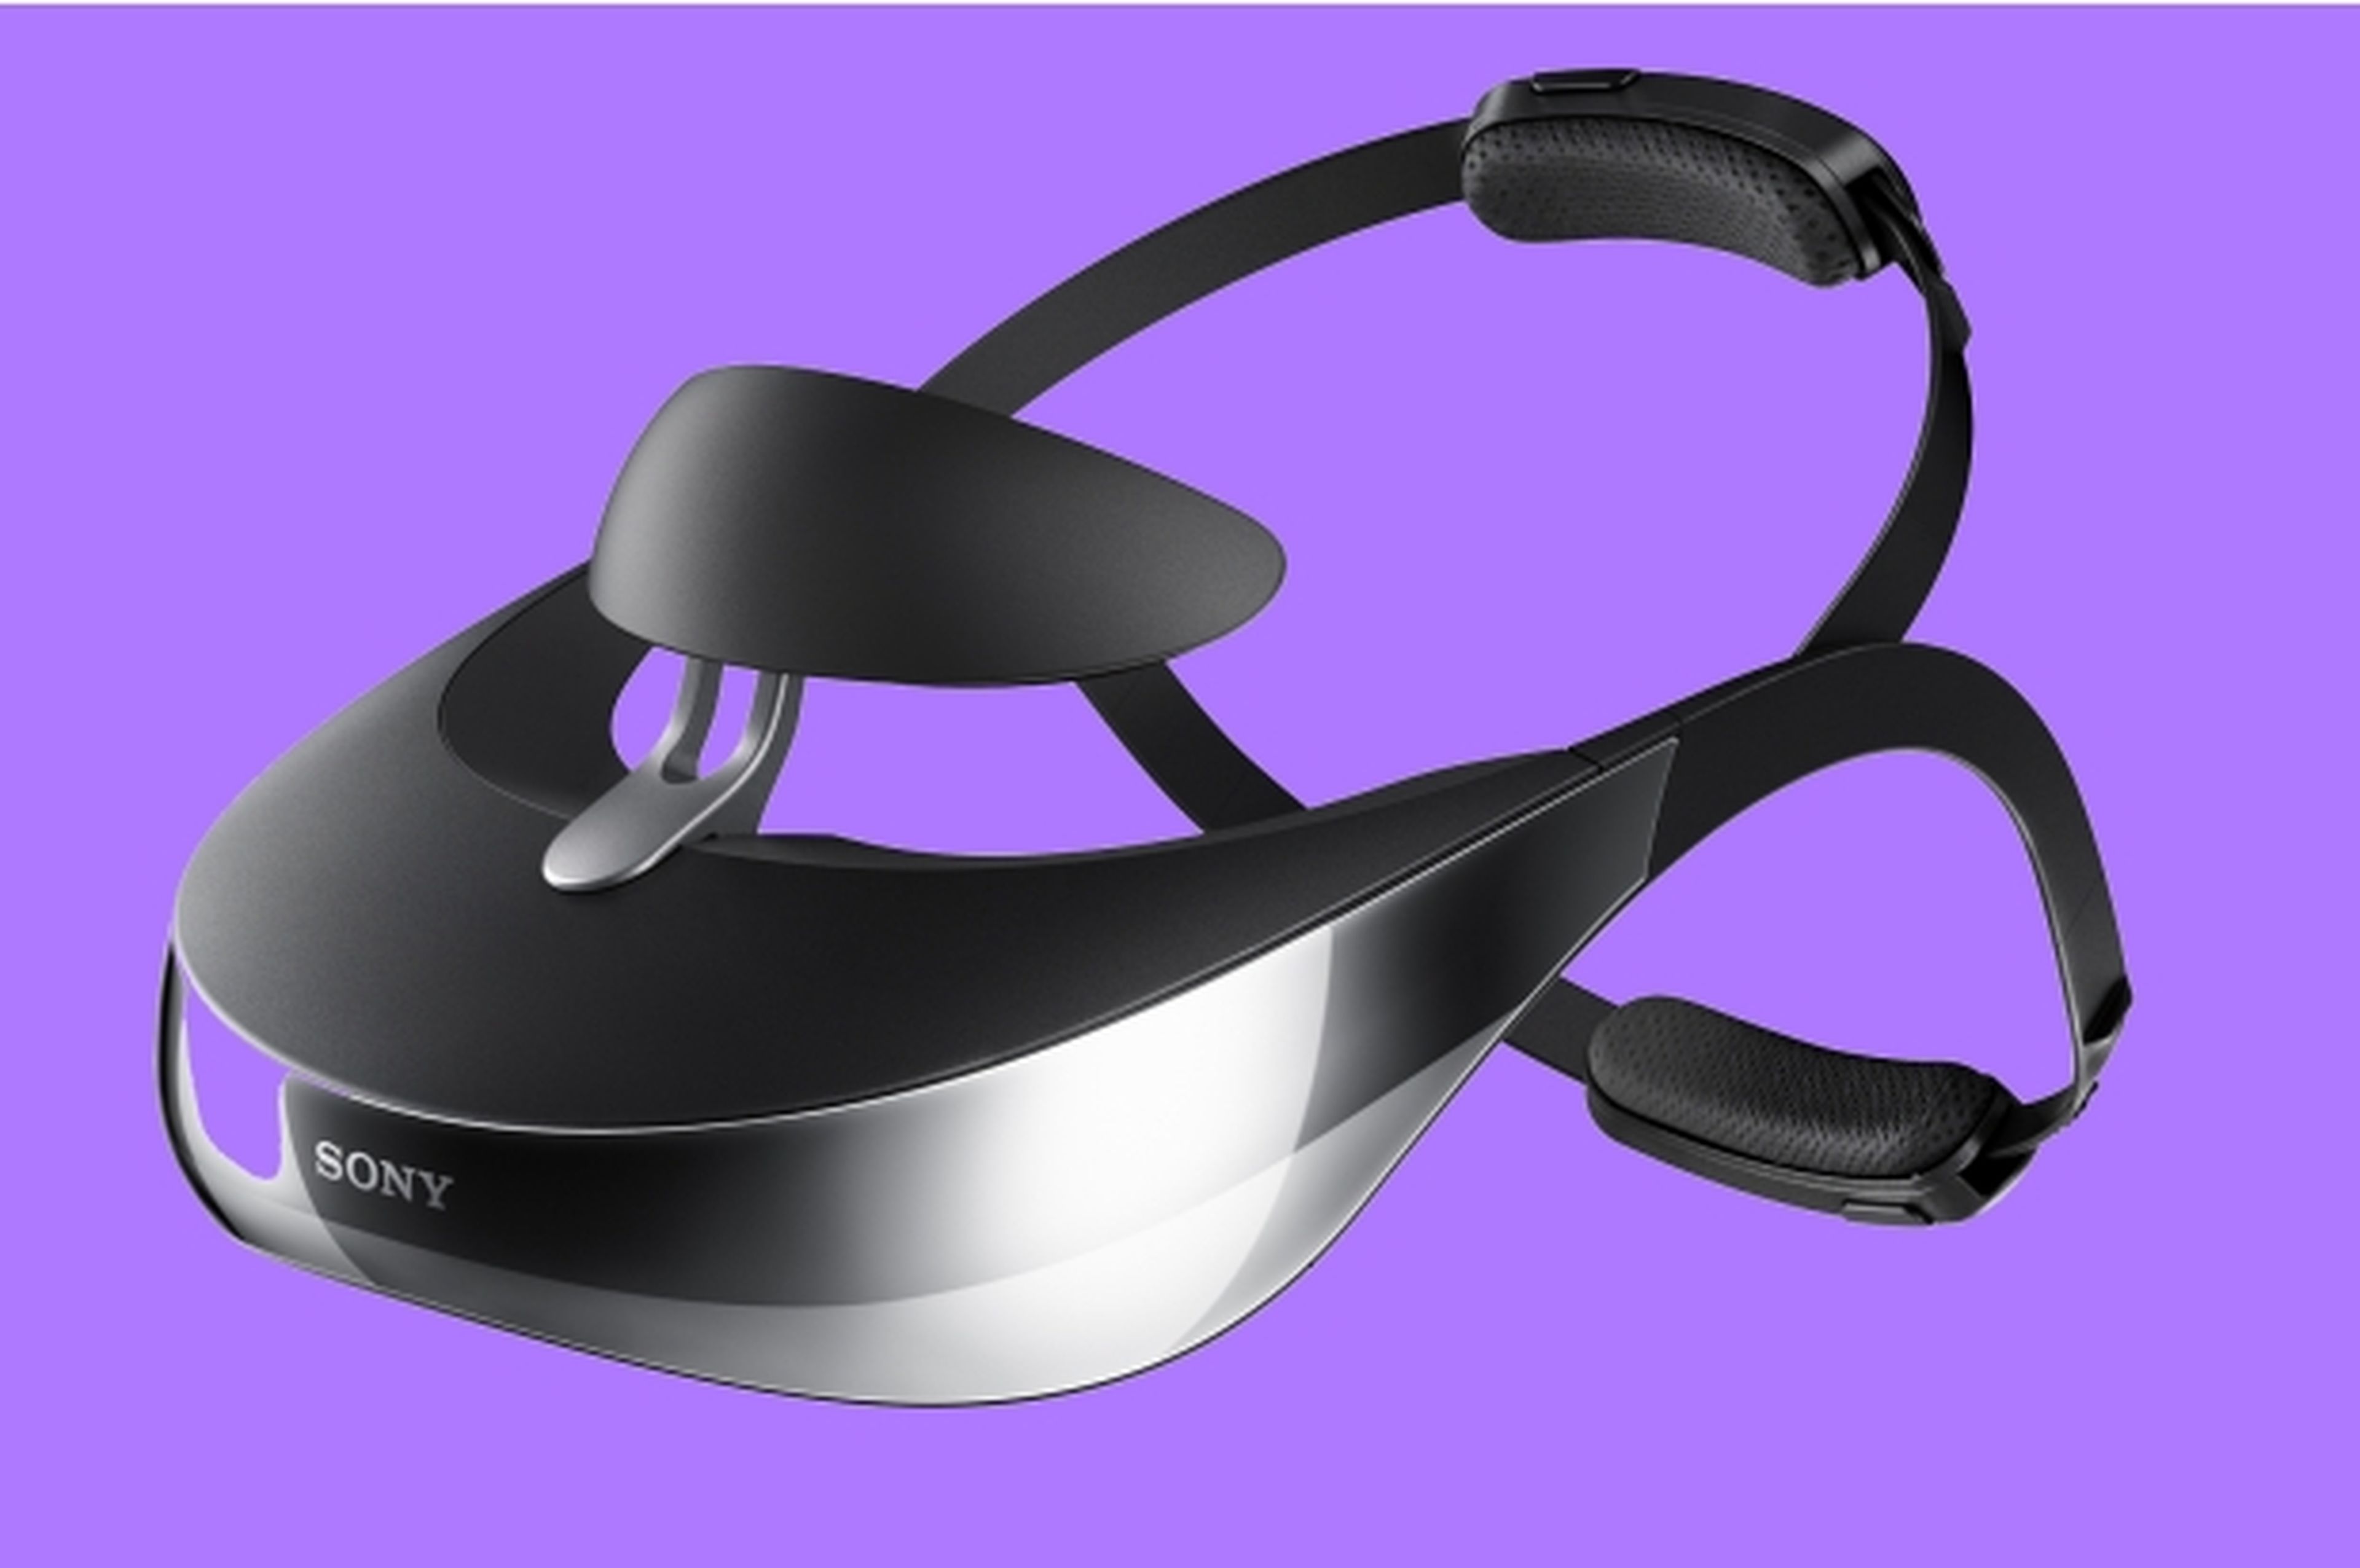 Sony HMZ-T3W, el visor que genera una pantalla virtual de 750 pulgadas